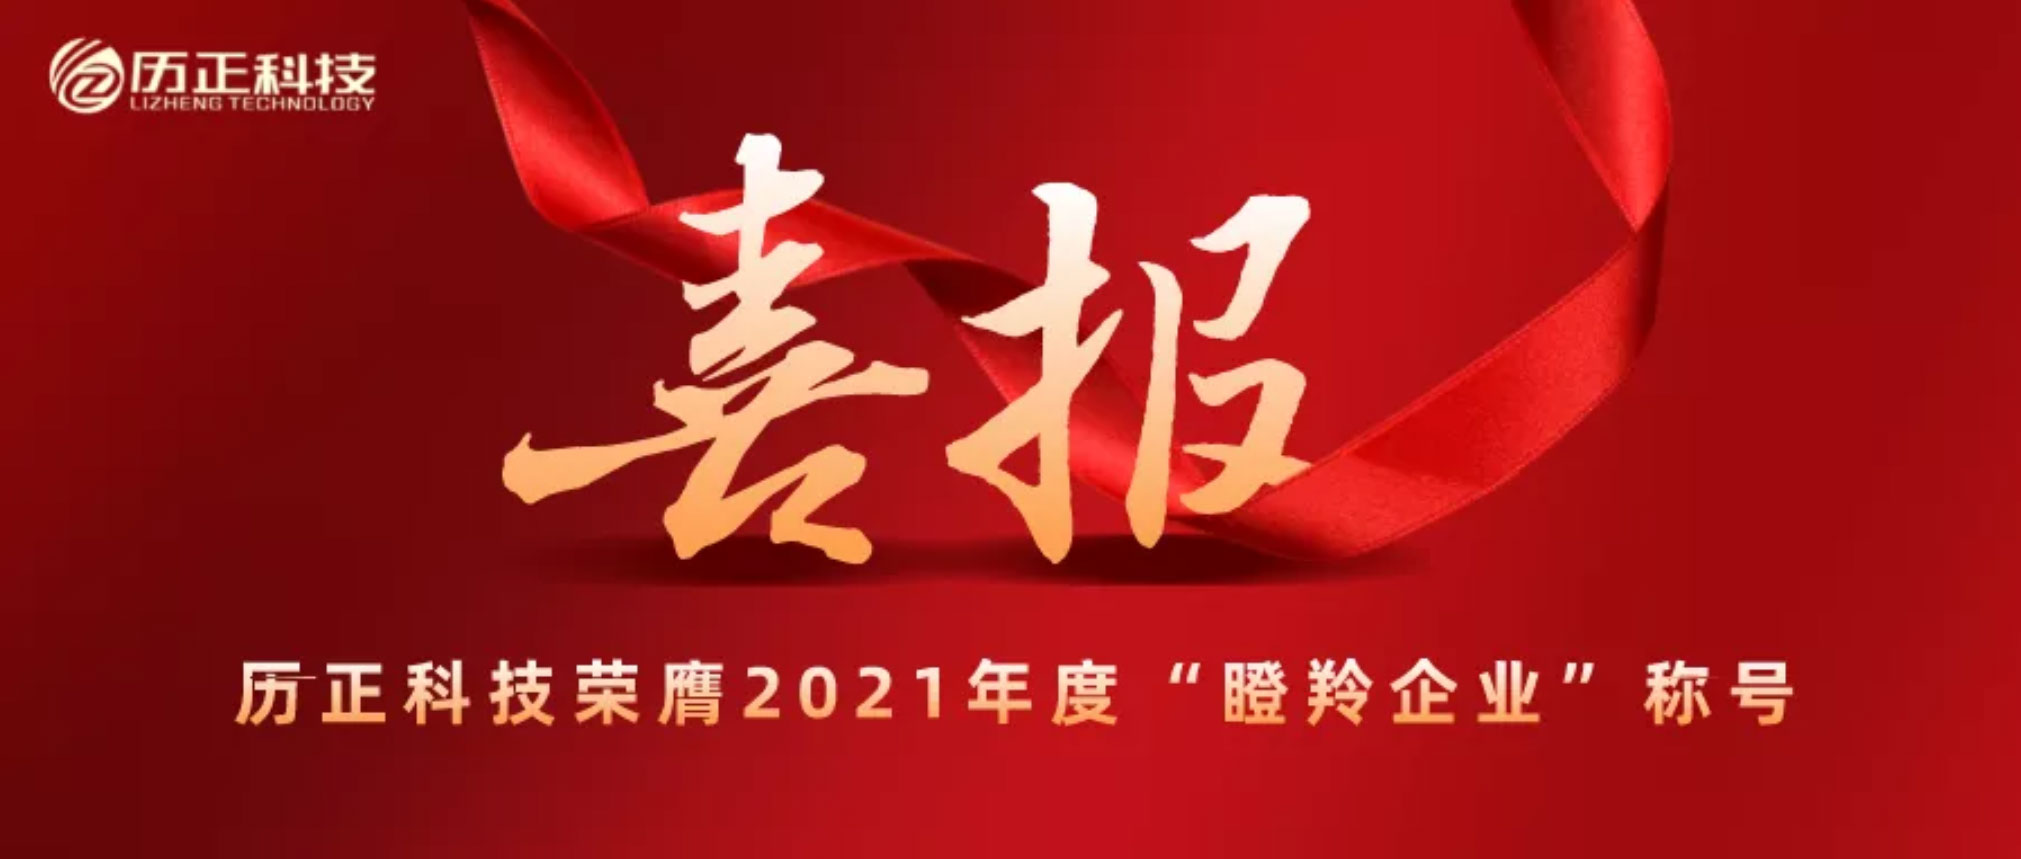 【行业快报】历正科技荣膺2021年度北京市“瞪羚企业”称号